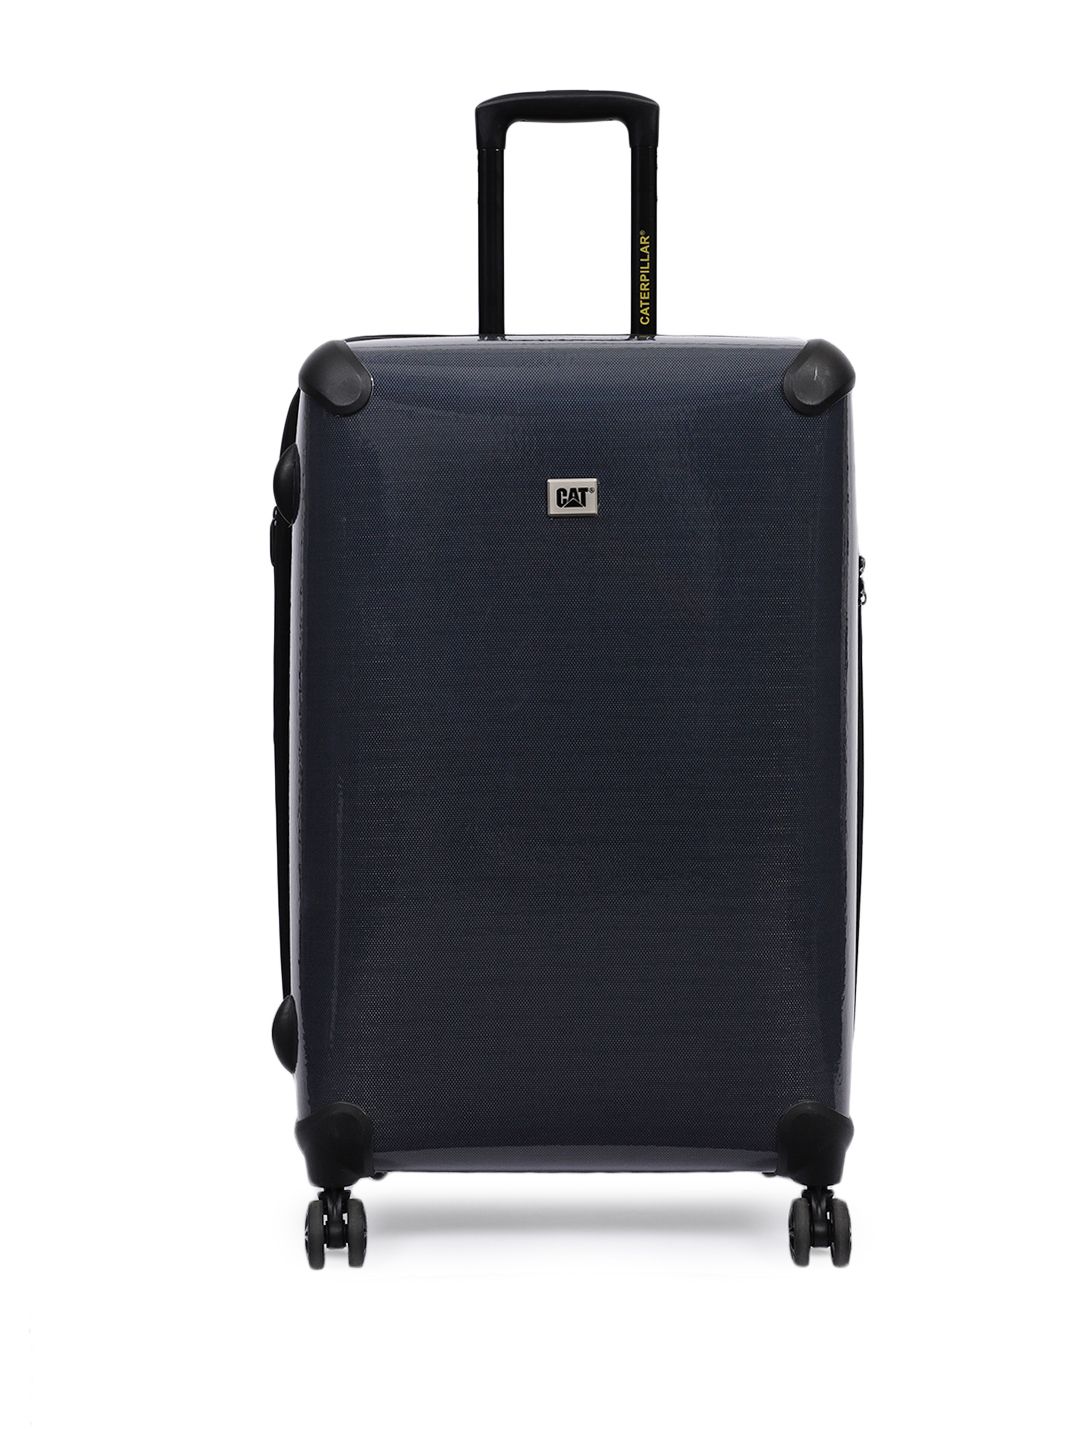 CAT Black Iris 24" Medium Trolley Suitcase Price in India